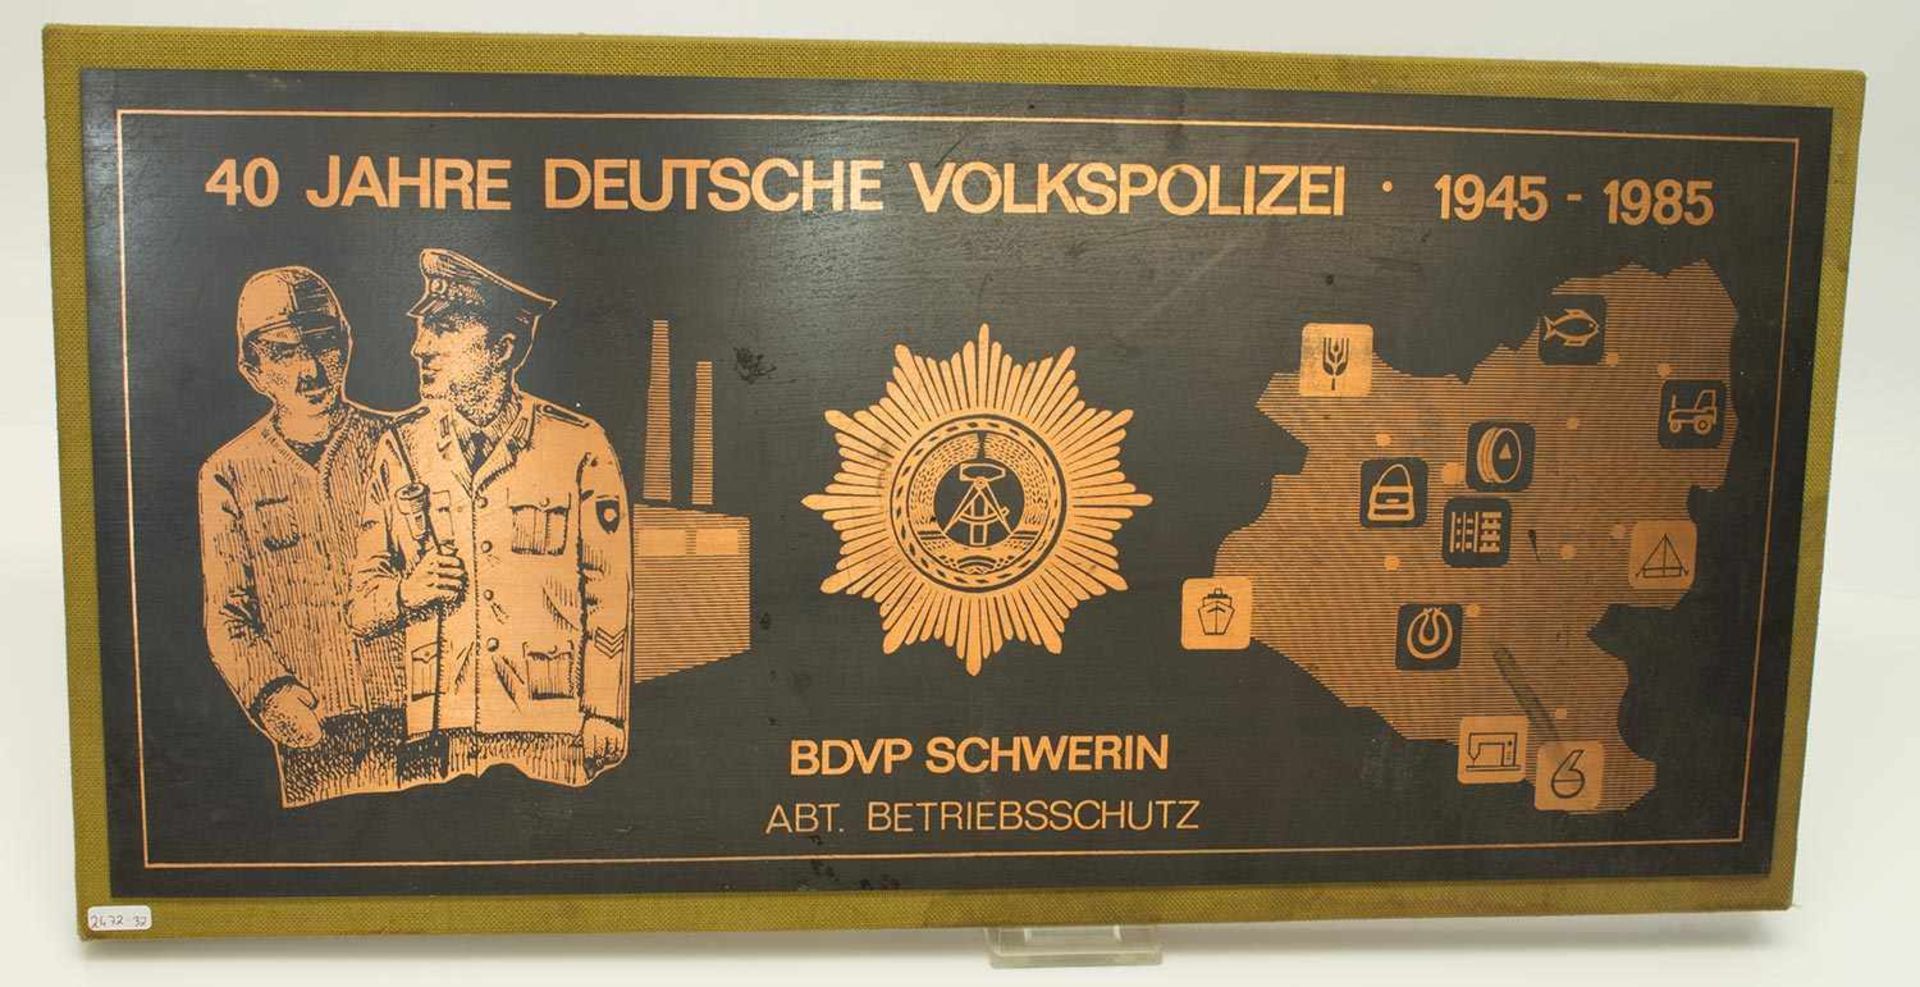 Jubiläumsschild„40 Jahre Deutsche Volkspolizei 1945 - 1985“, Bezirksbehörde der